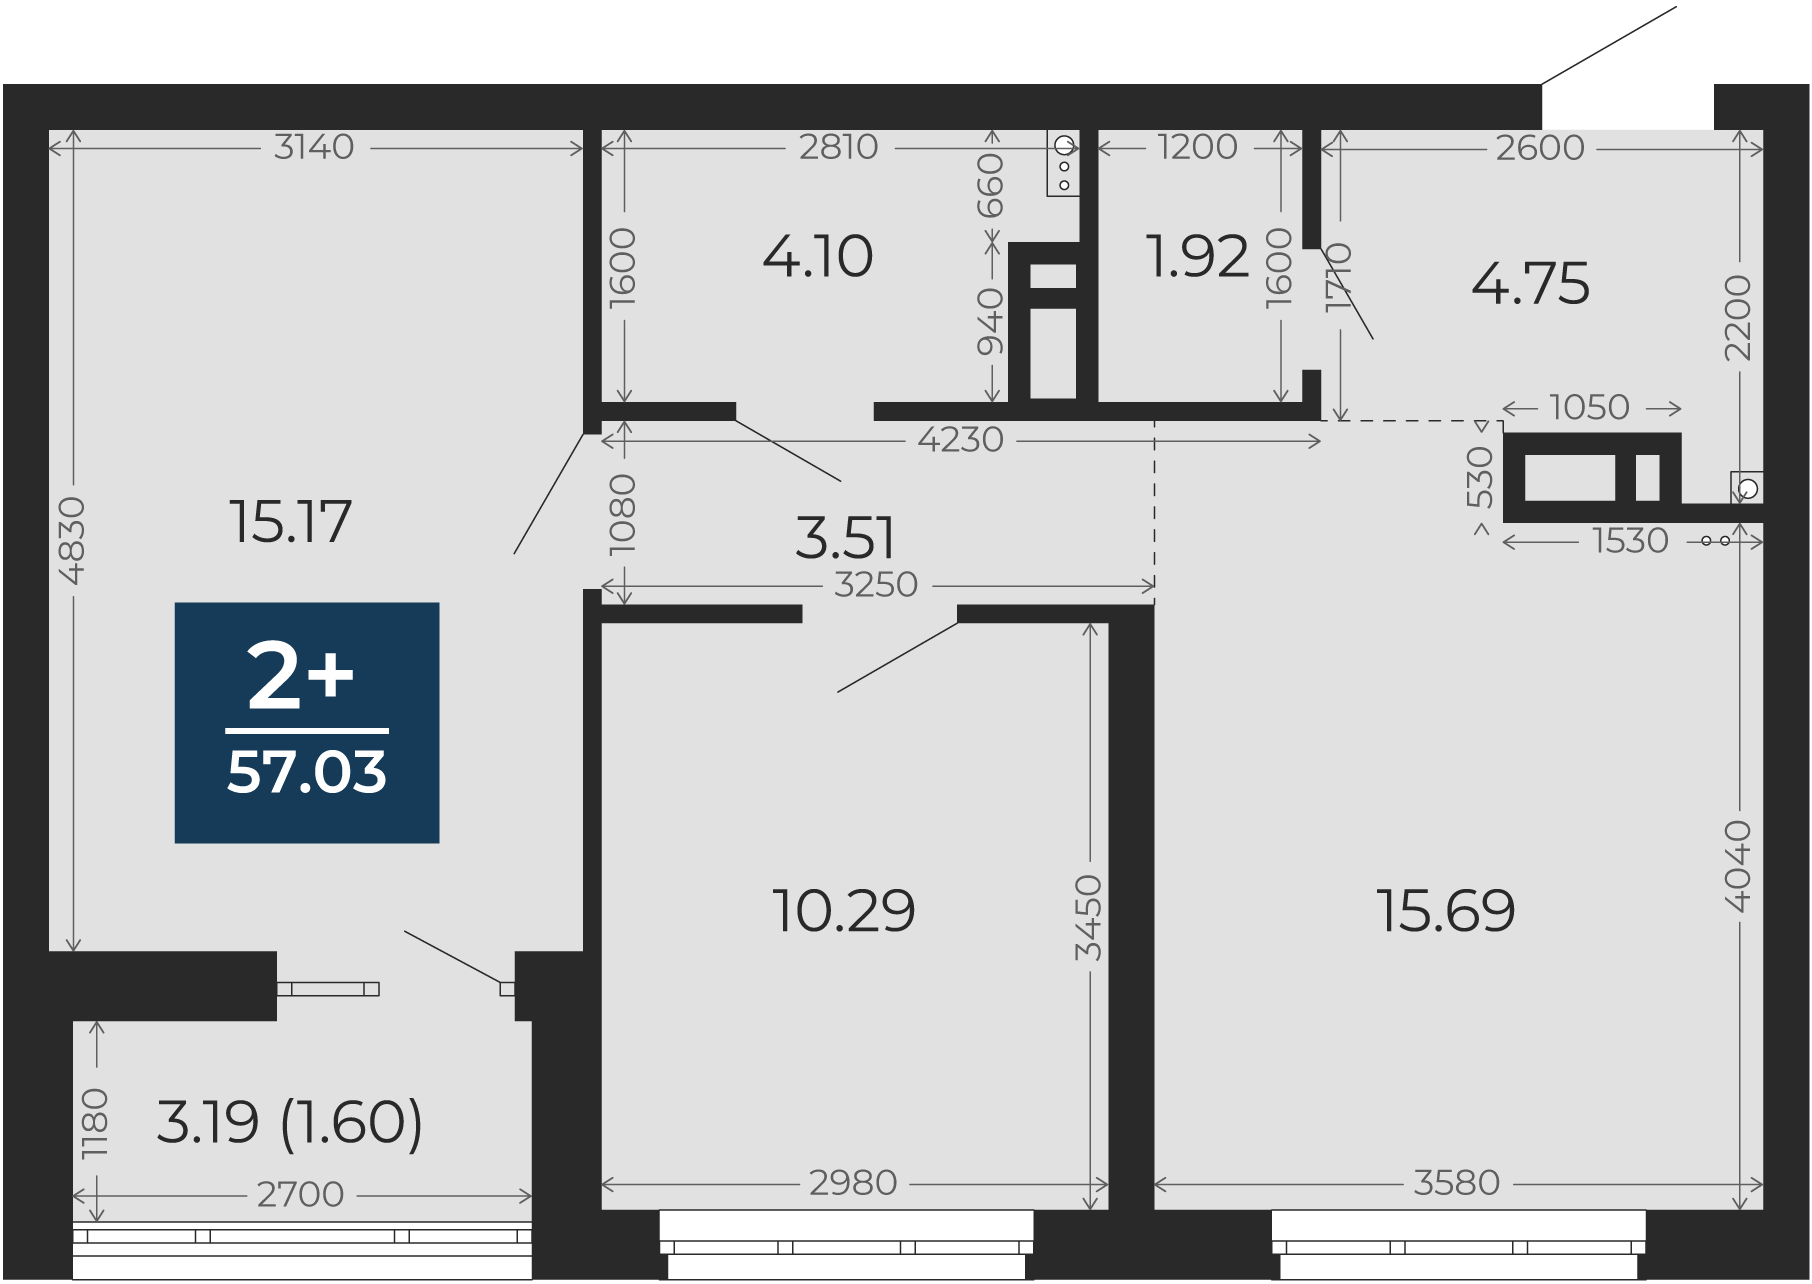 Квартира № 401, 2-комнатная, 57.03 кв. м, 10 этаж